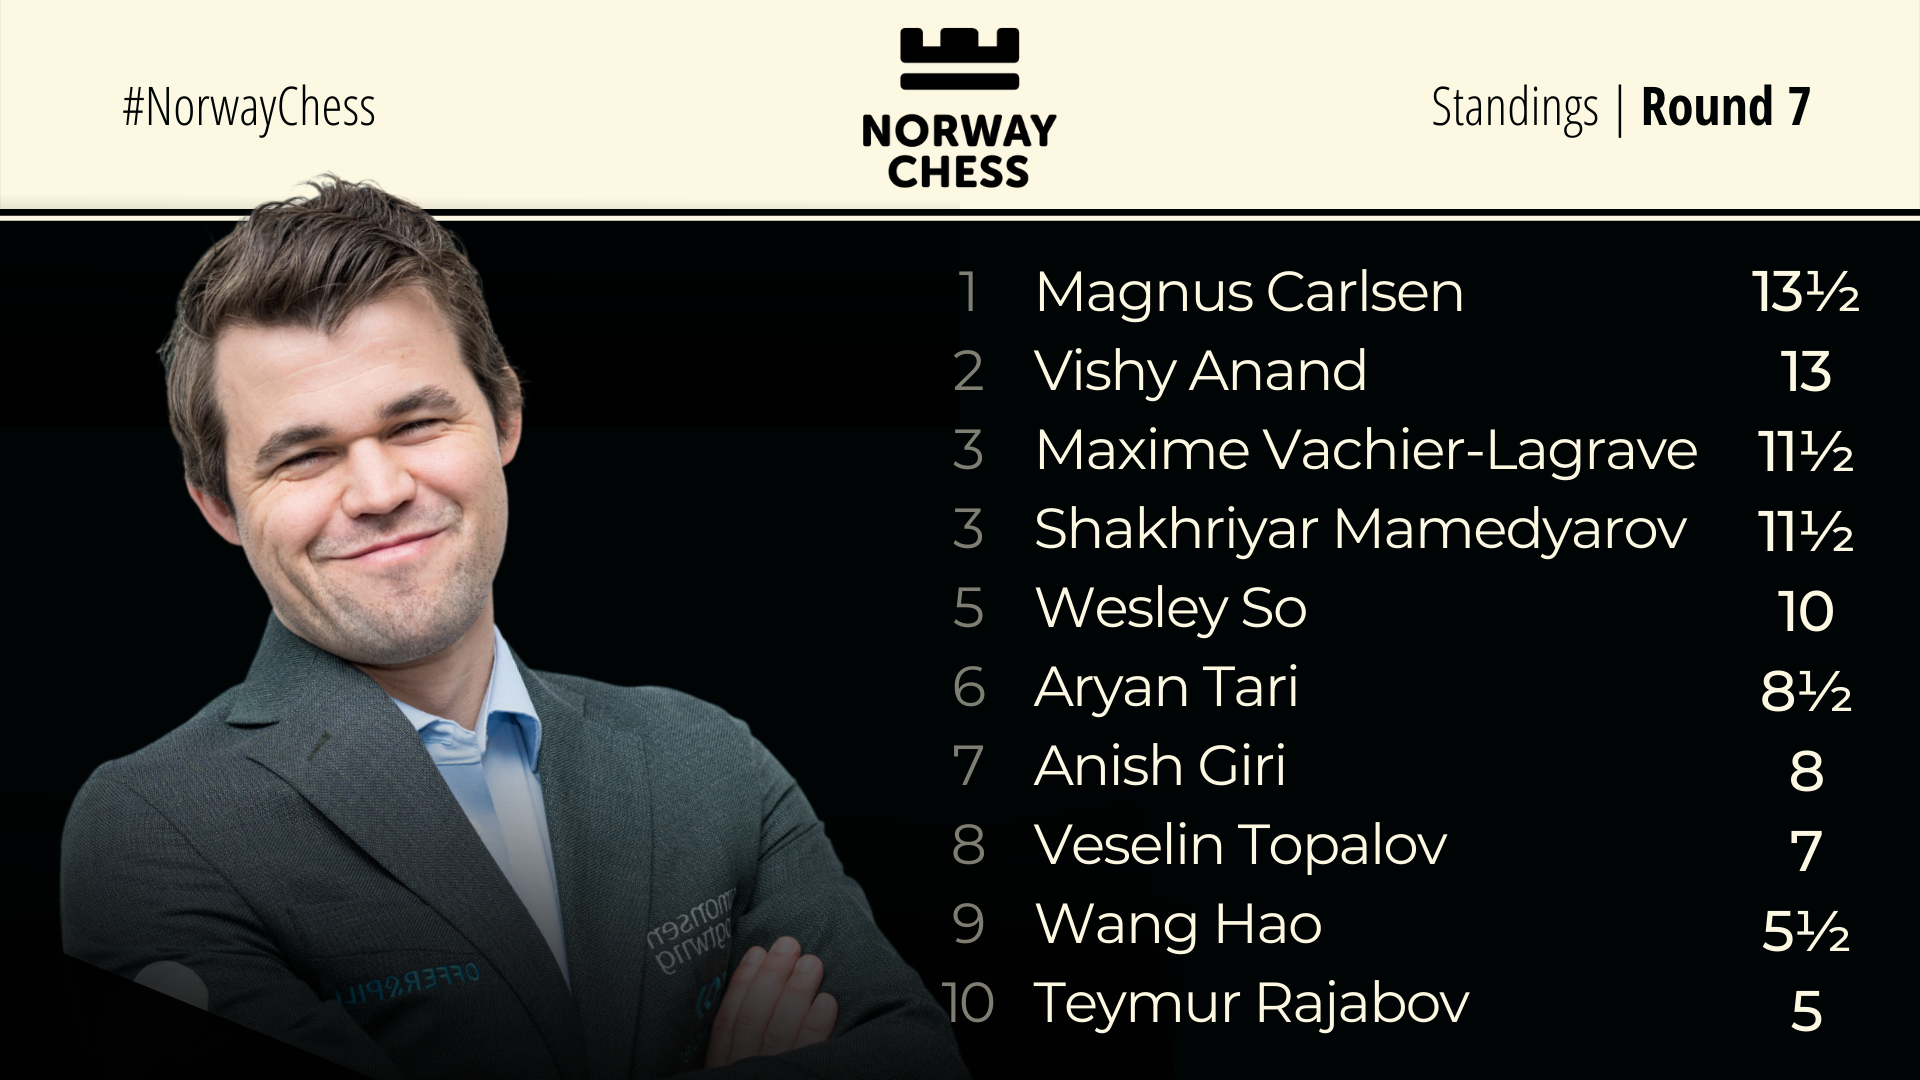 Norway Chess Standings Round 7